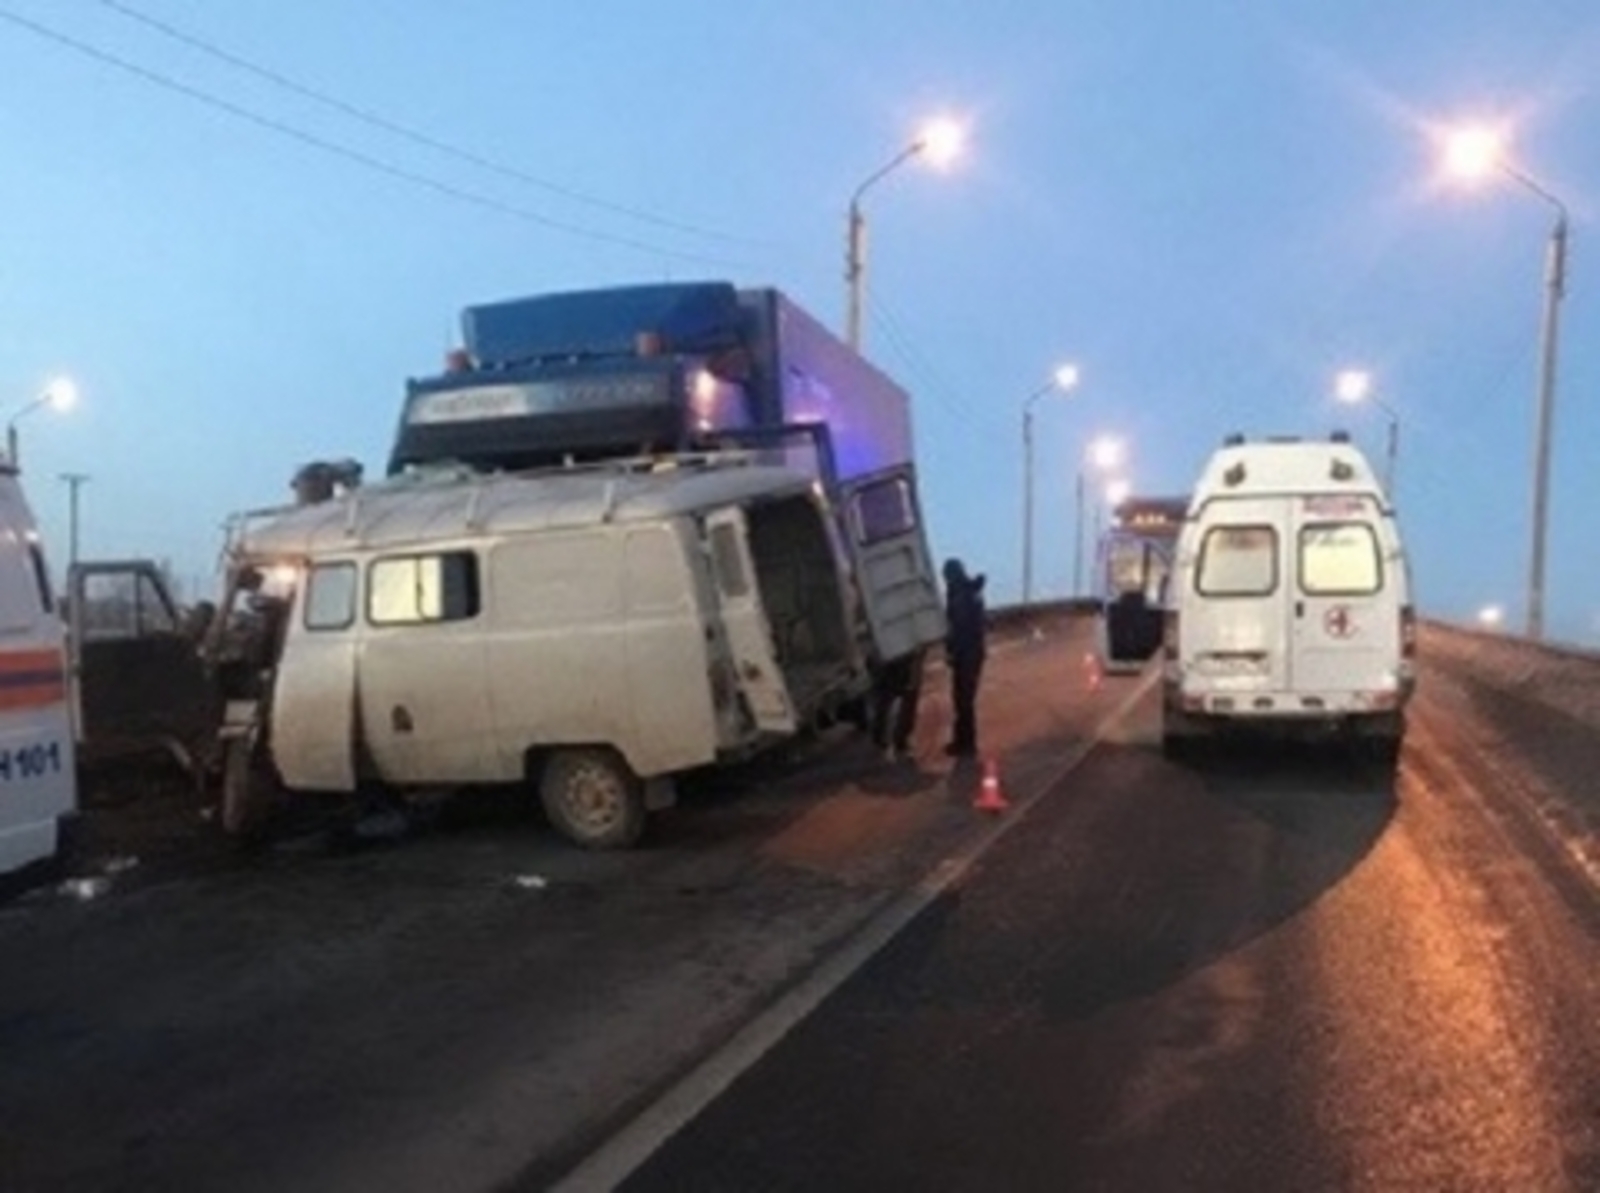 "Ехали в сторону арендуемого жилья": два жителя Башкирии погибли в ДТП с большегрузом в Кстовском районе